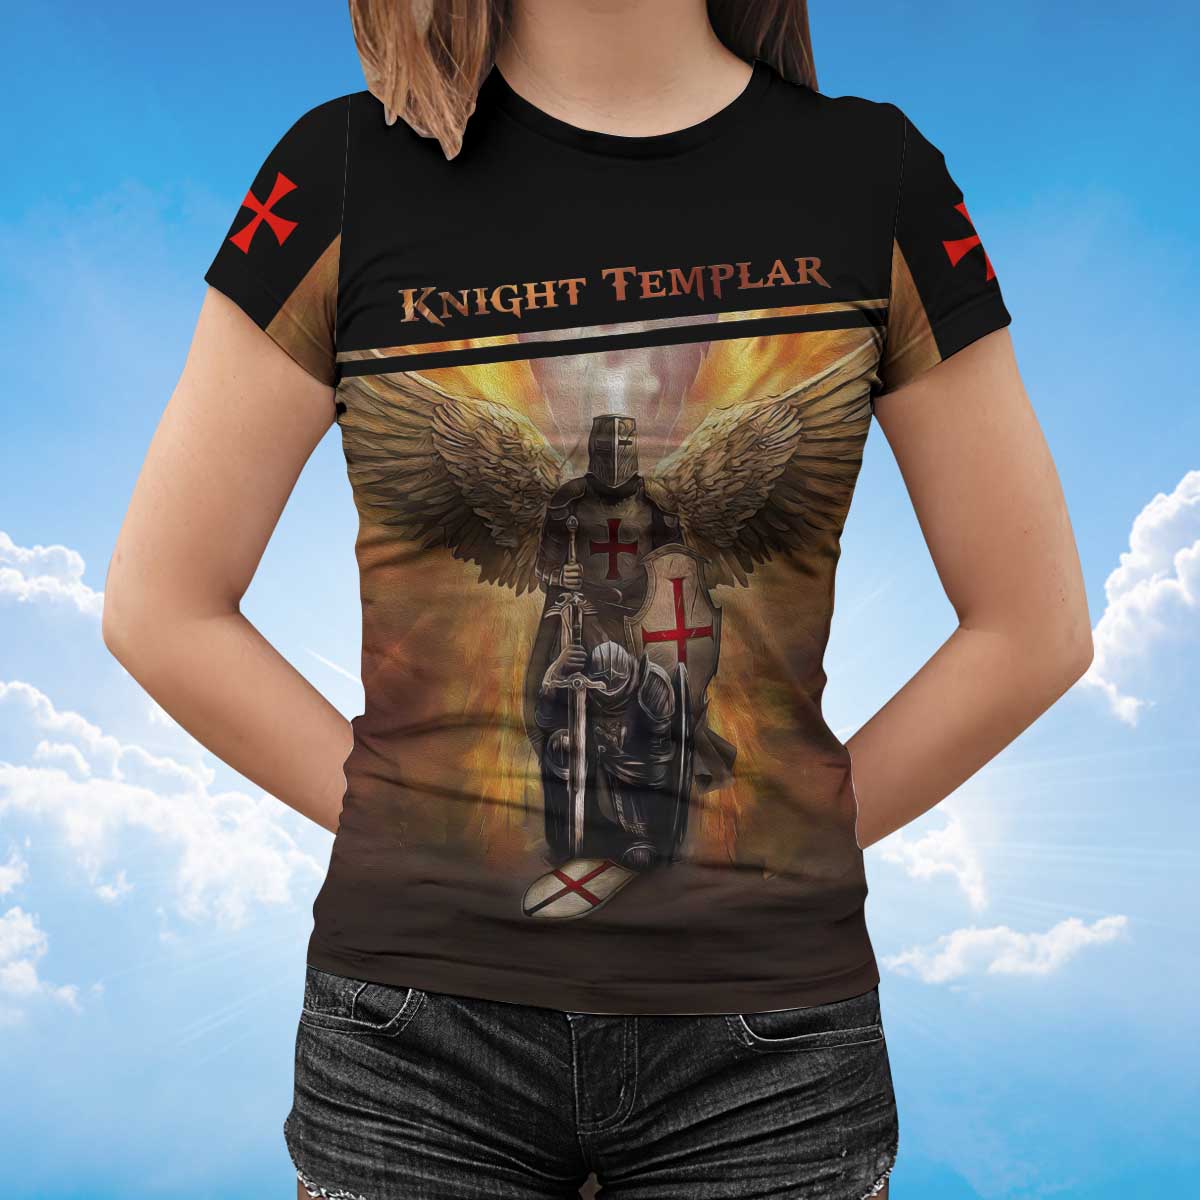 Knight Templar Tshirt Wings Of Knight Templar Shirt